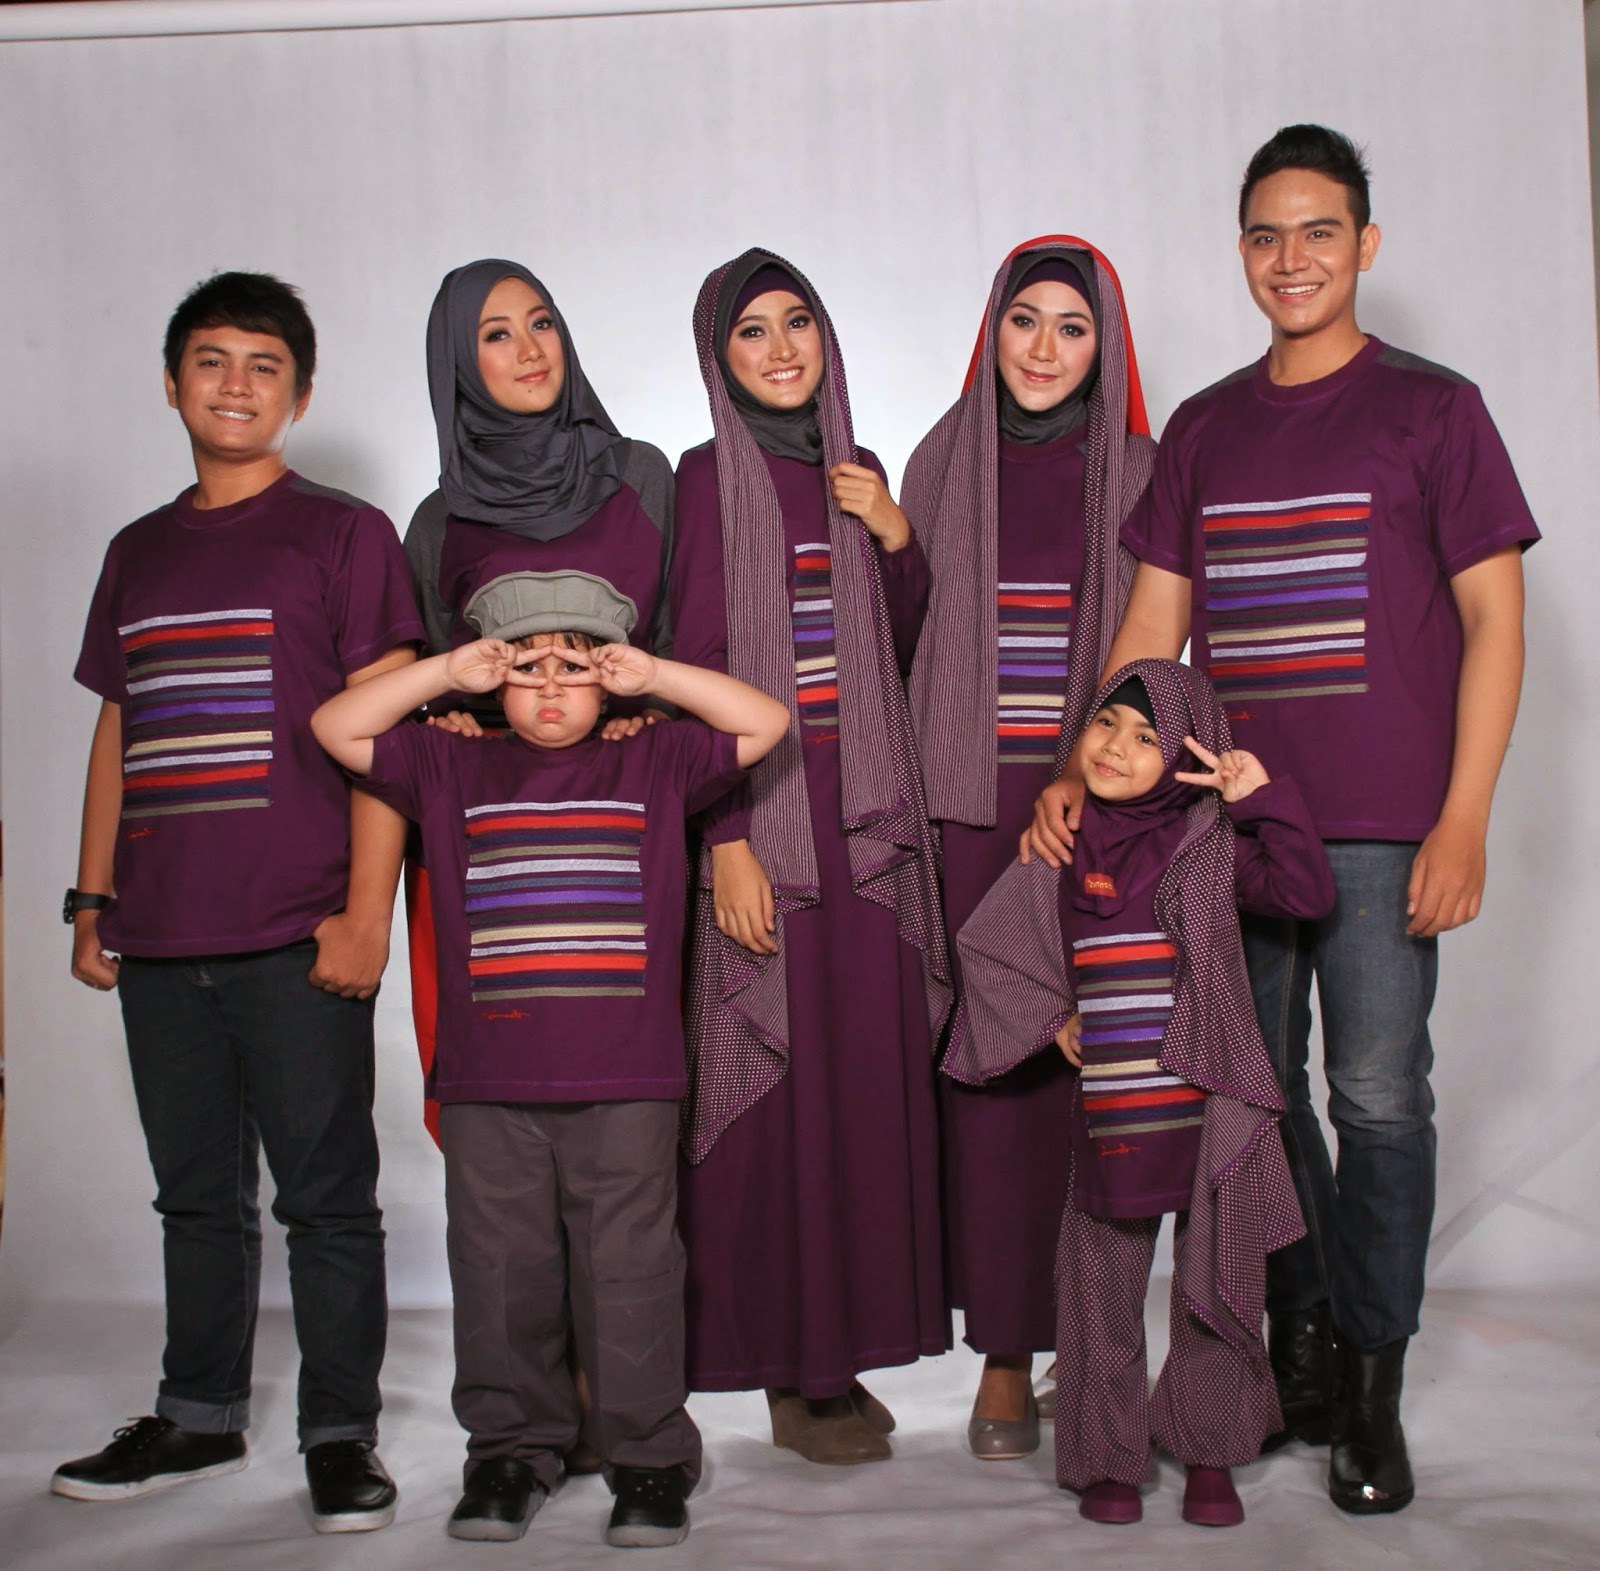 Bentuk Baju Lebaran Sarimbit 2018 Etdg Model Baju Keluarga Untuk Hari Raya Lebaran 2018